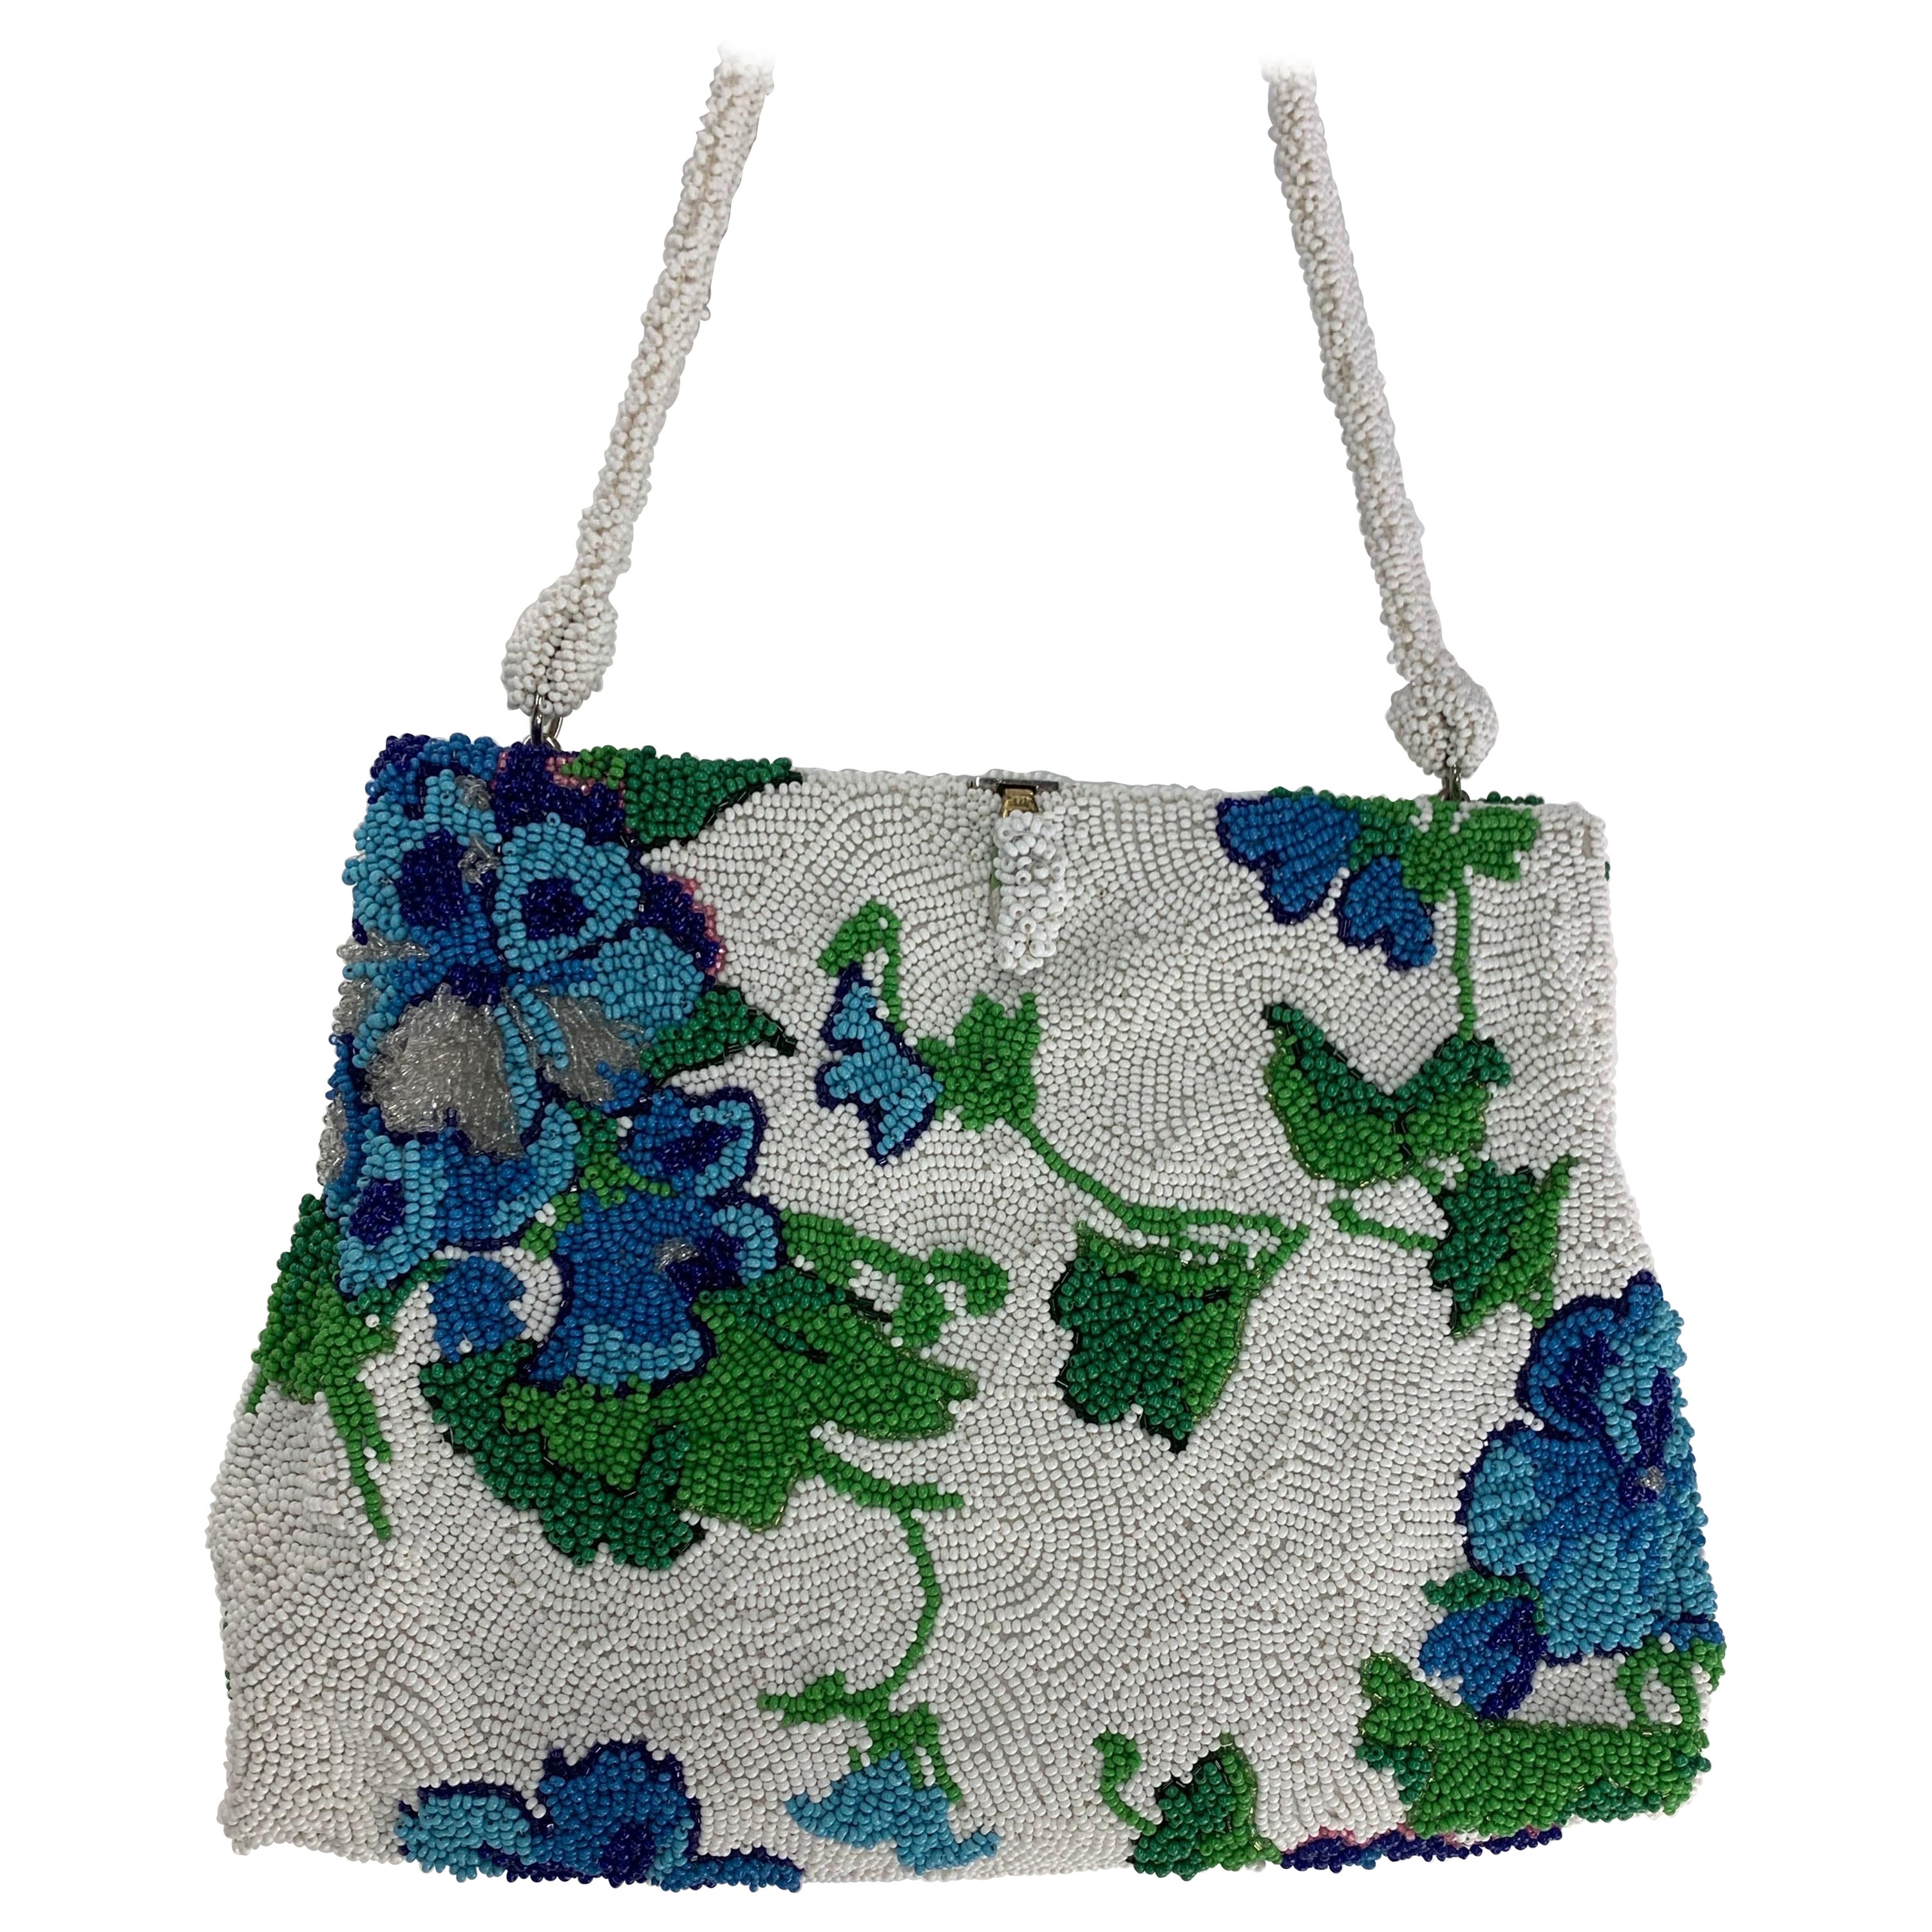 1950 Koret Tresor Stunning Floral Beaded Handbag In Green & Blue On White Ground For Sale